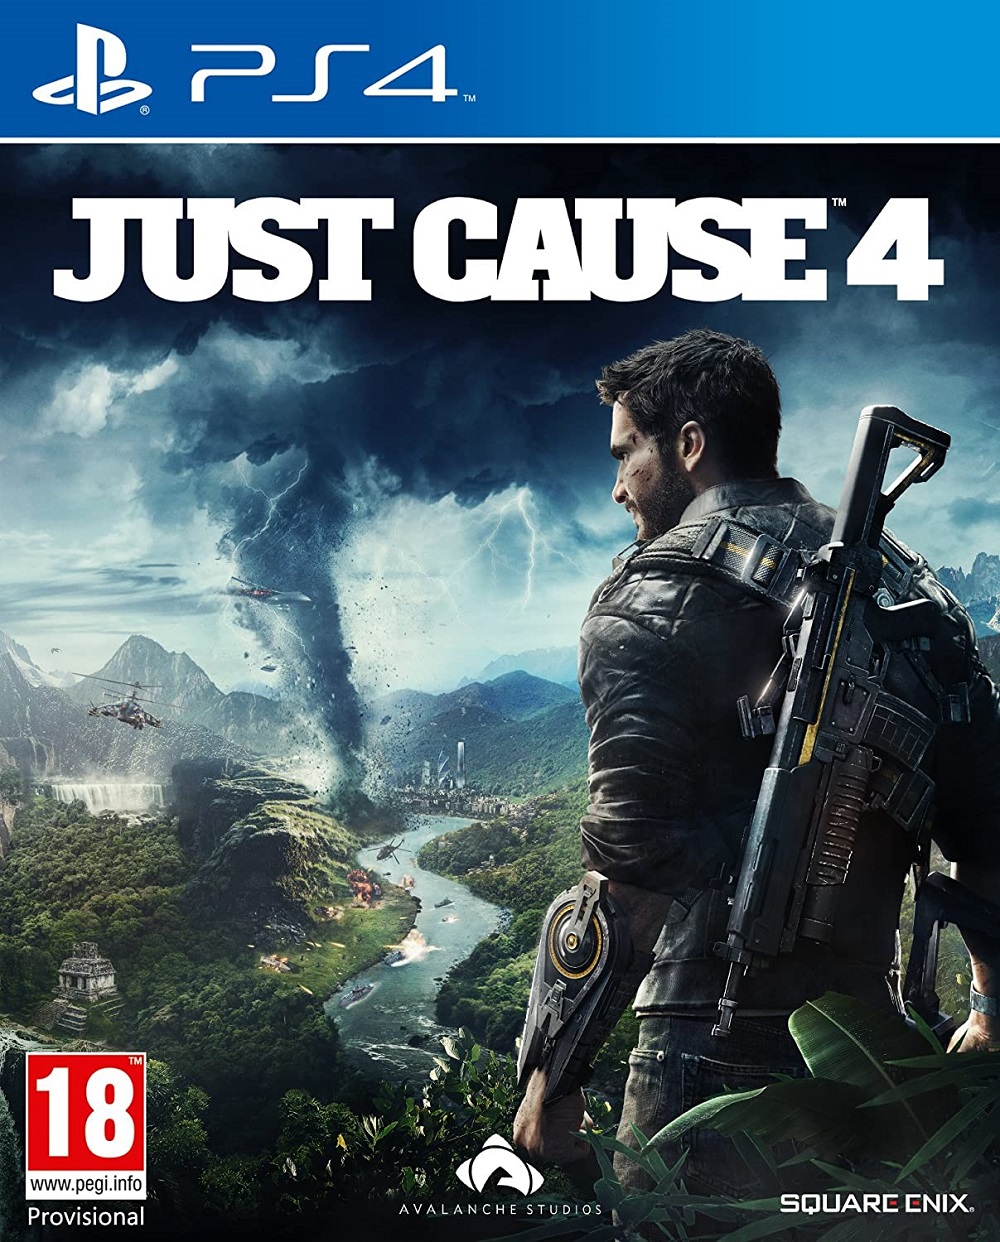 خرید بازی Just Cause 4 برای PS4